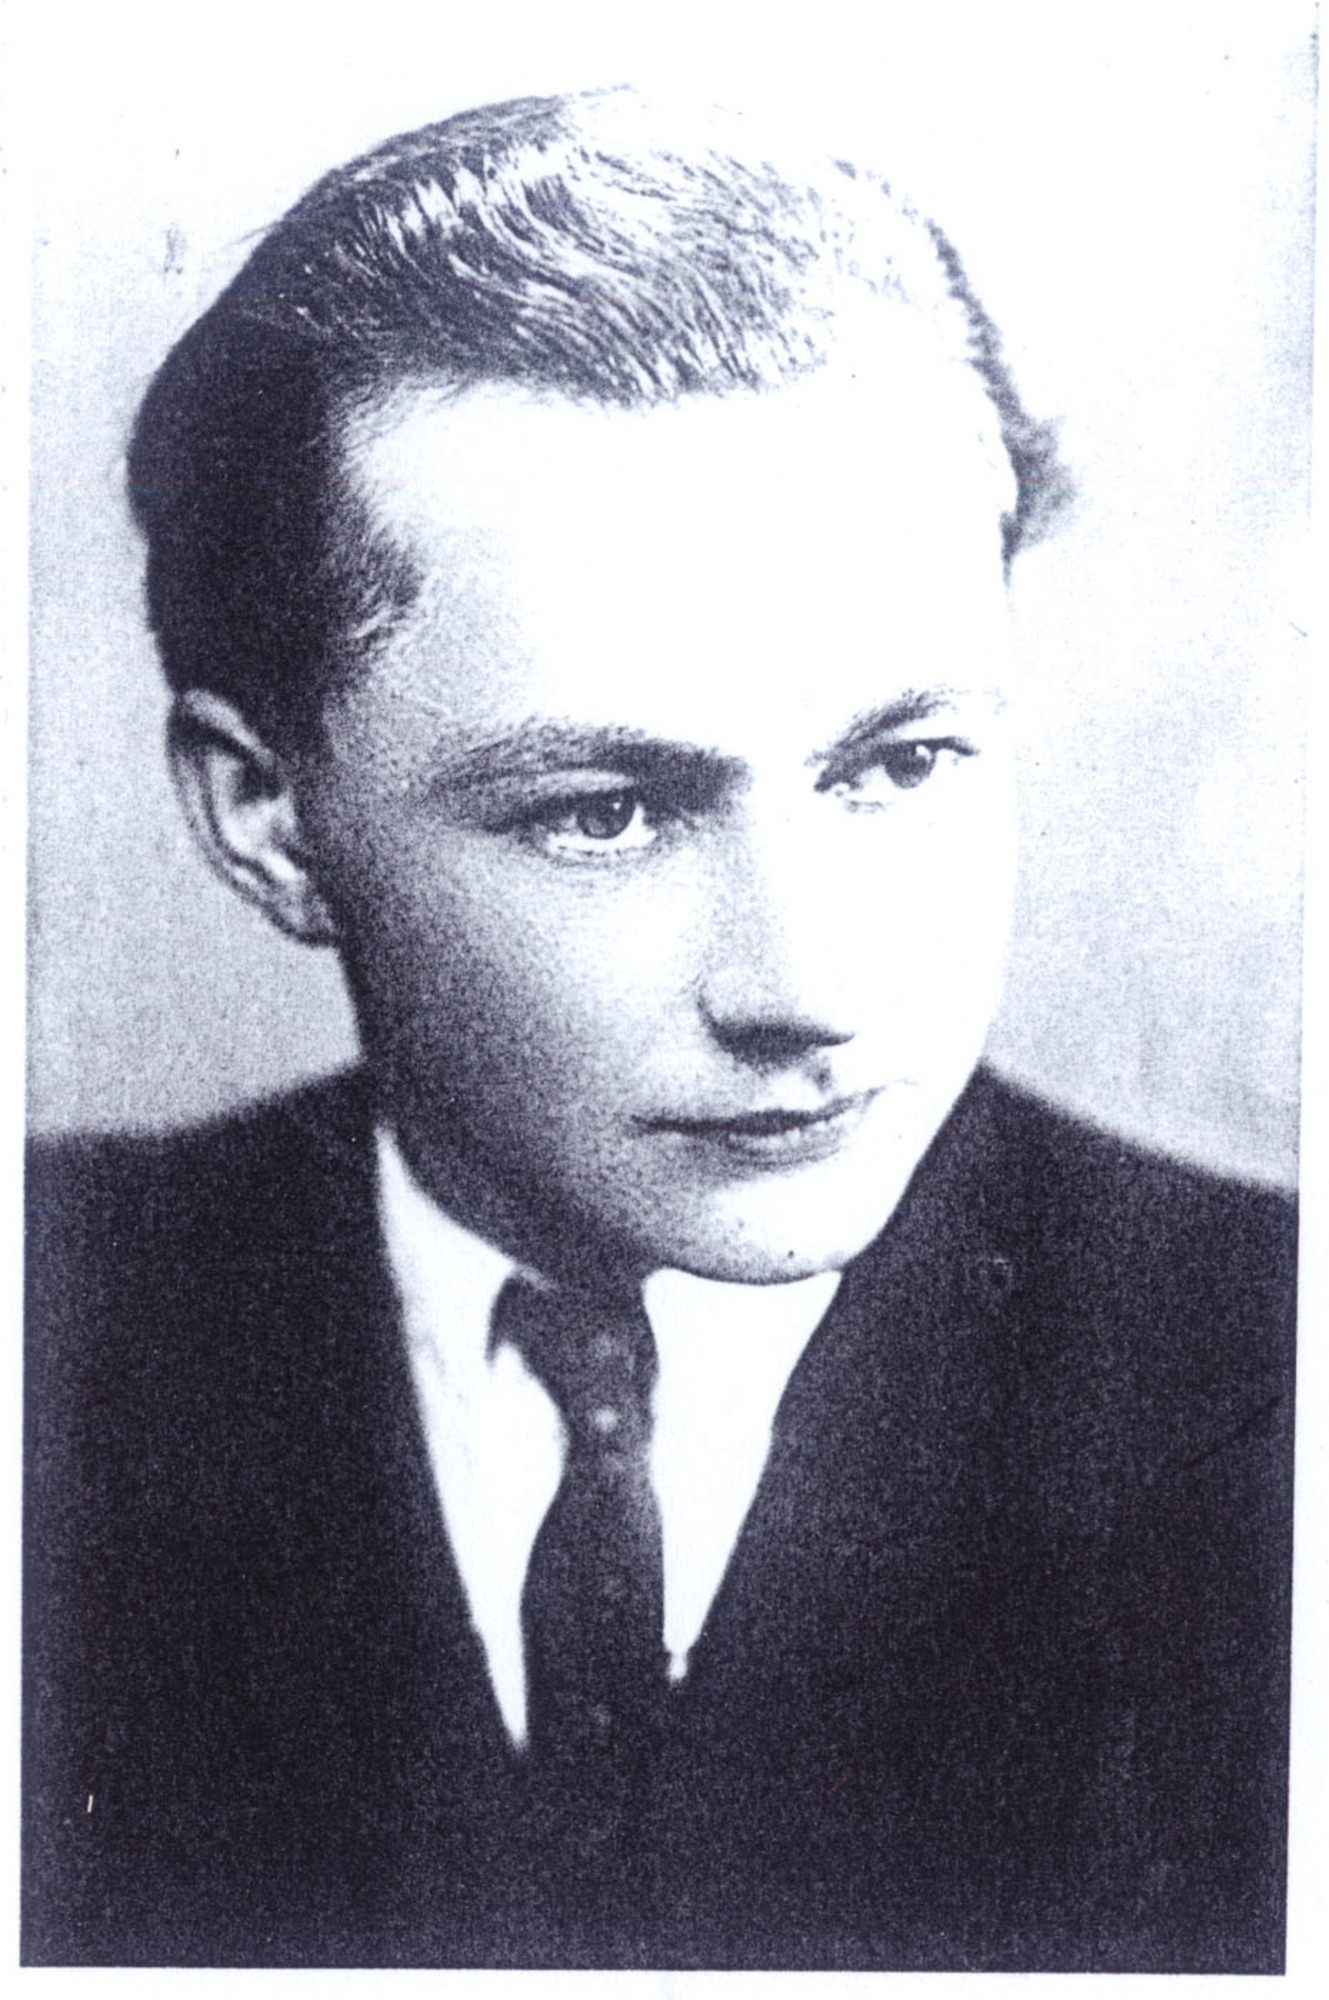 Přemek Neumann in 40s